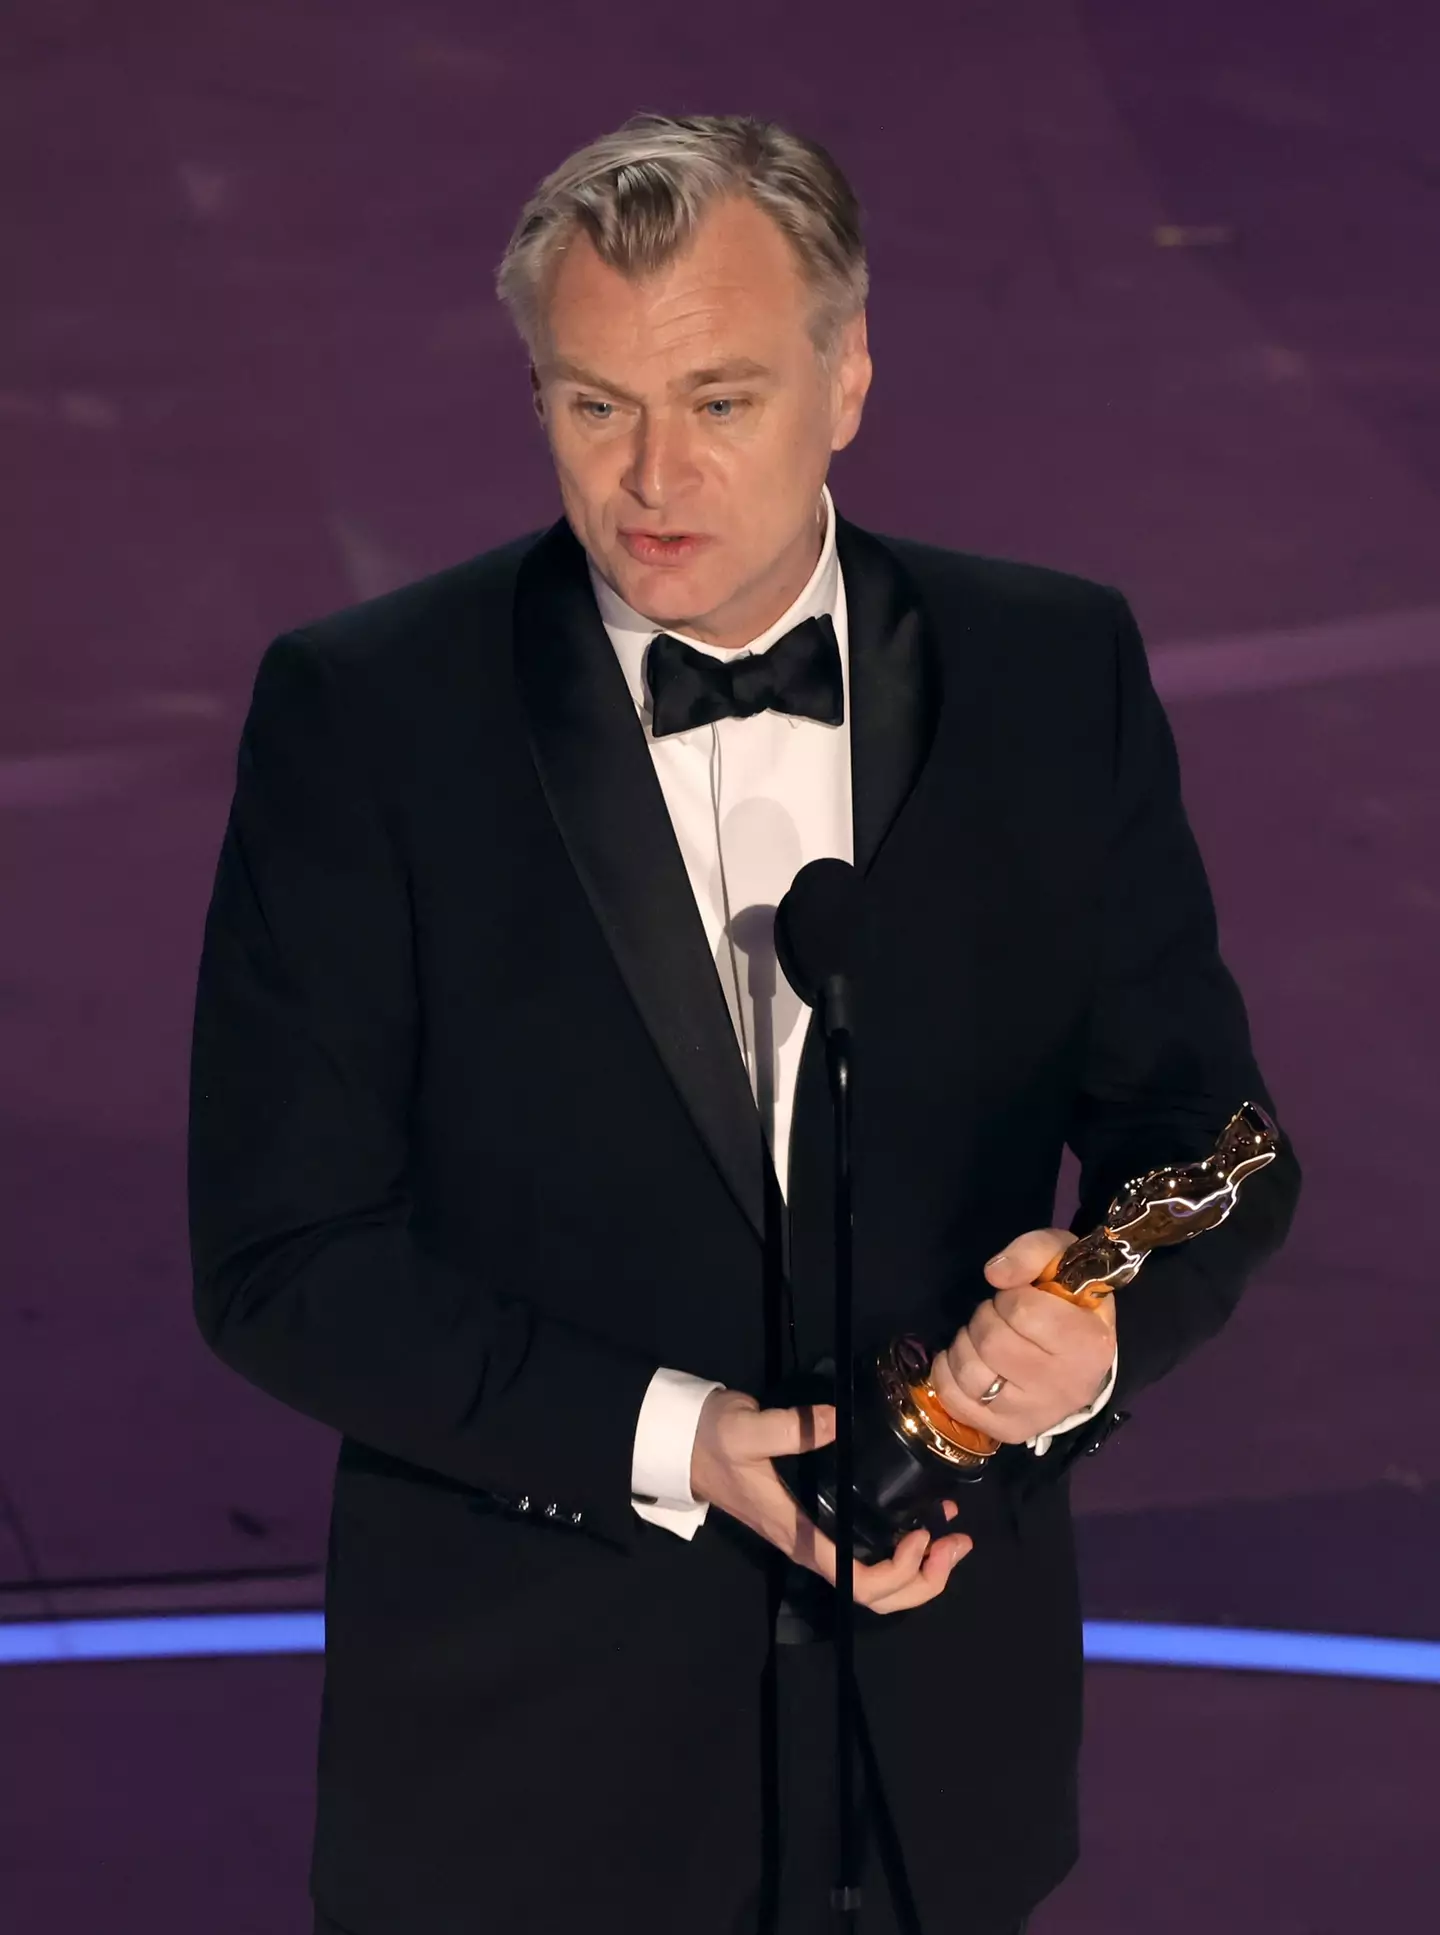 Christopher Nolan won best director.